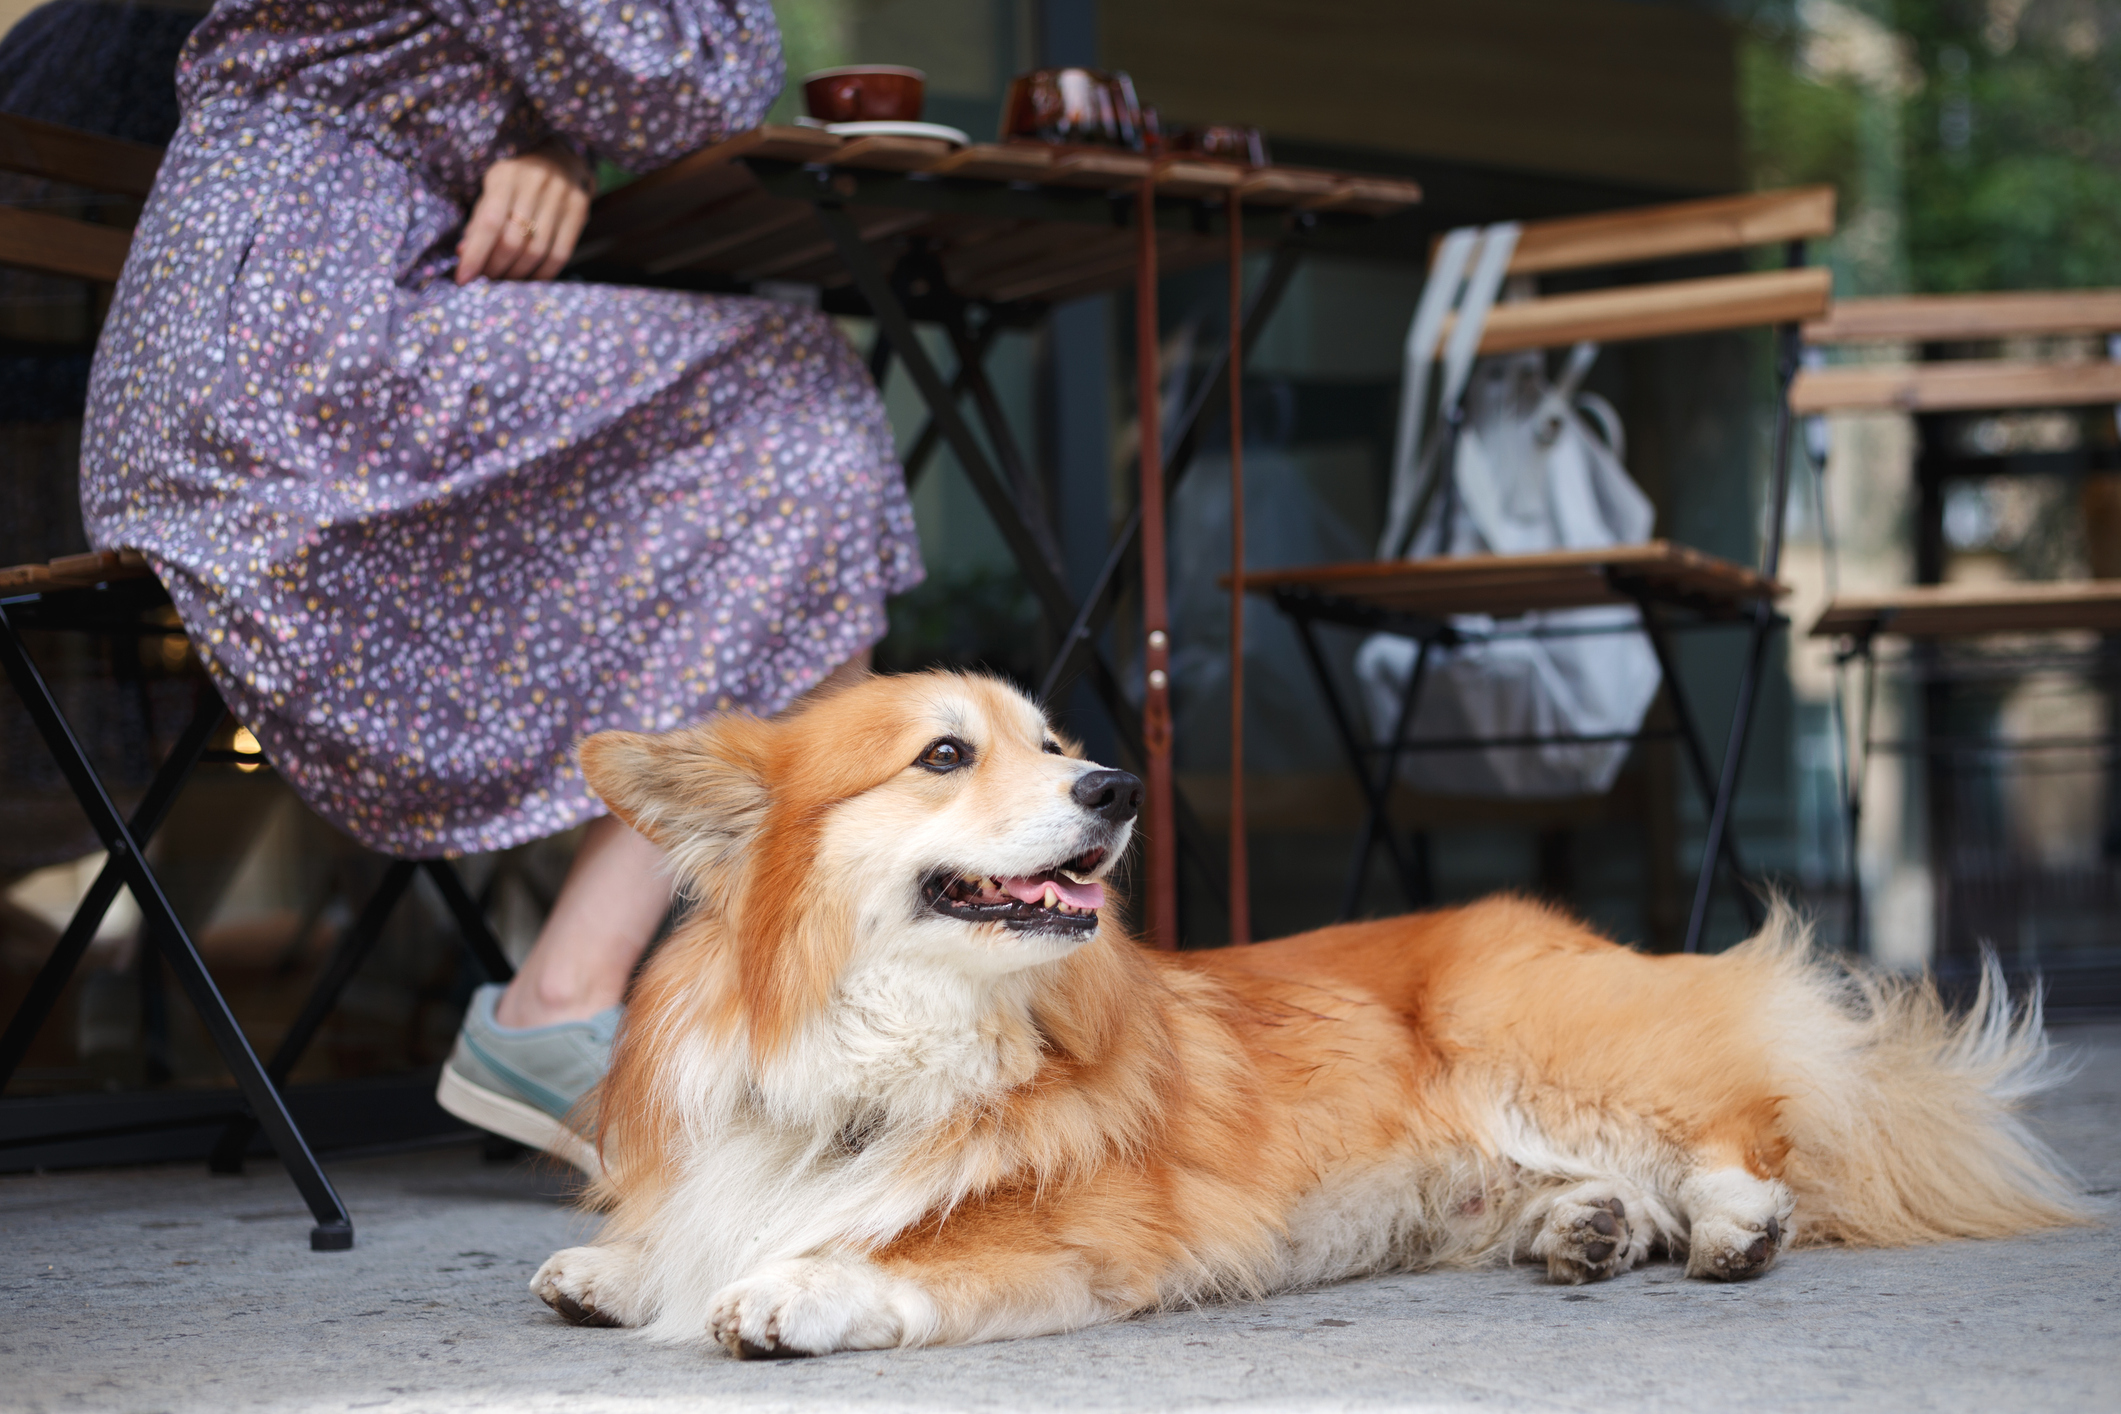 Dog-friendly Restaurants on Hilton Head Island